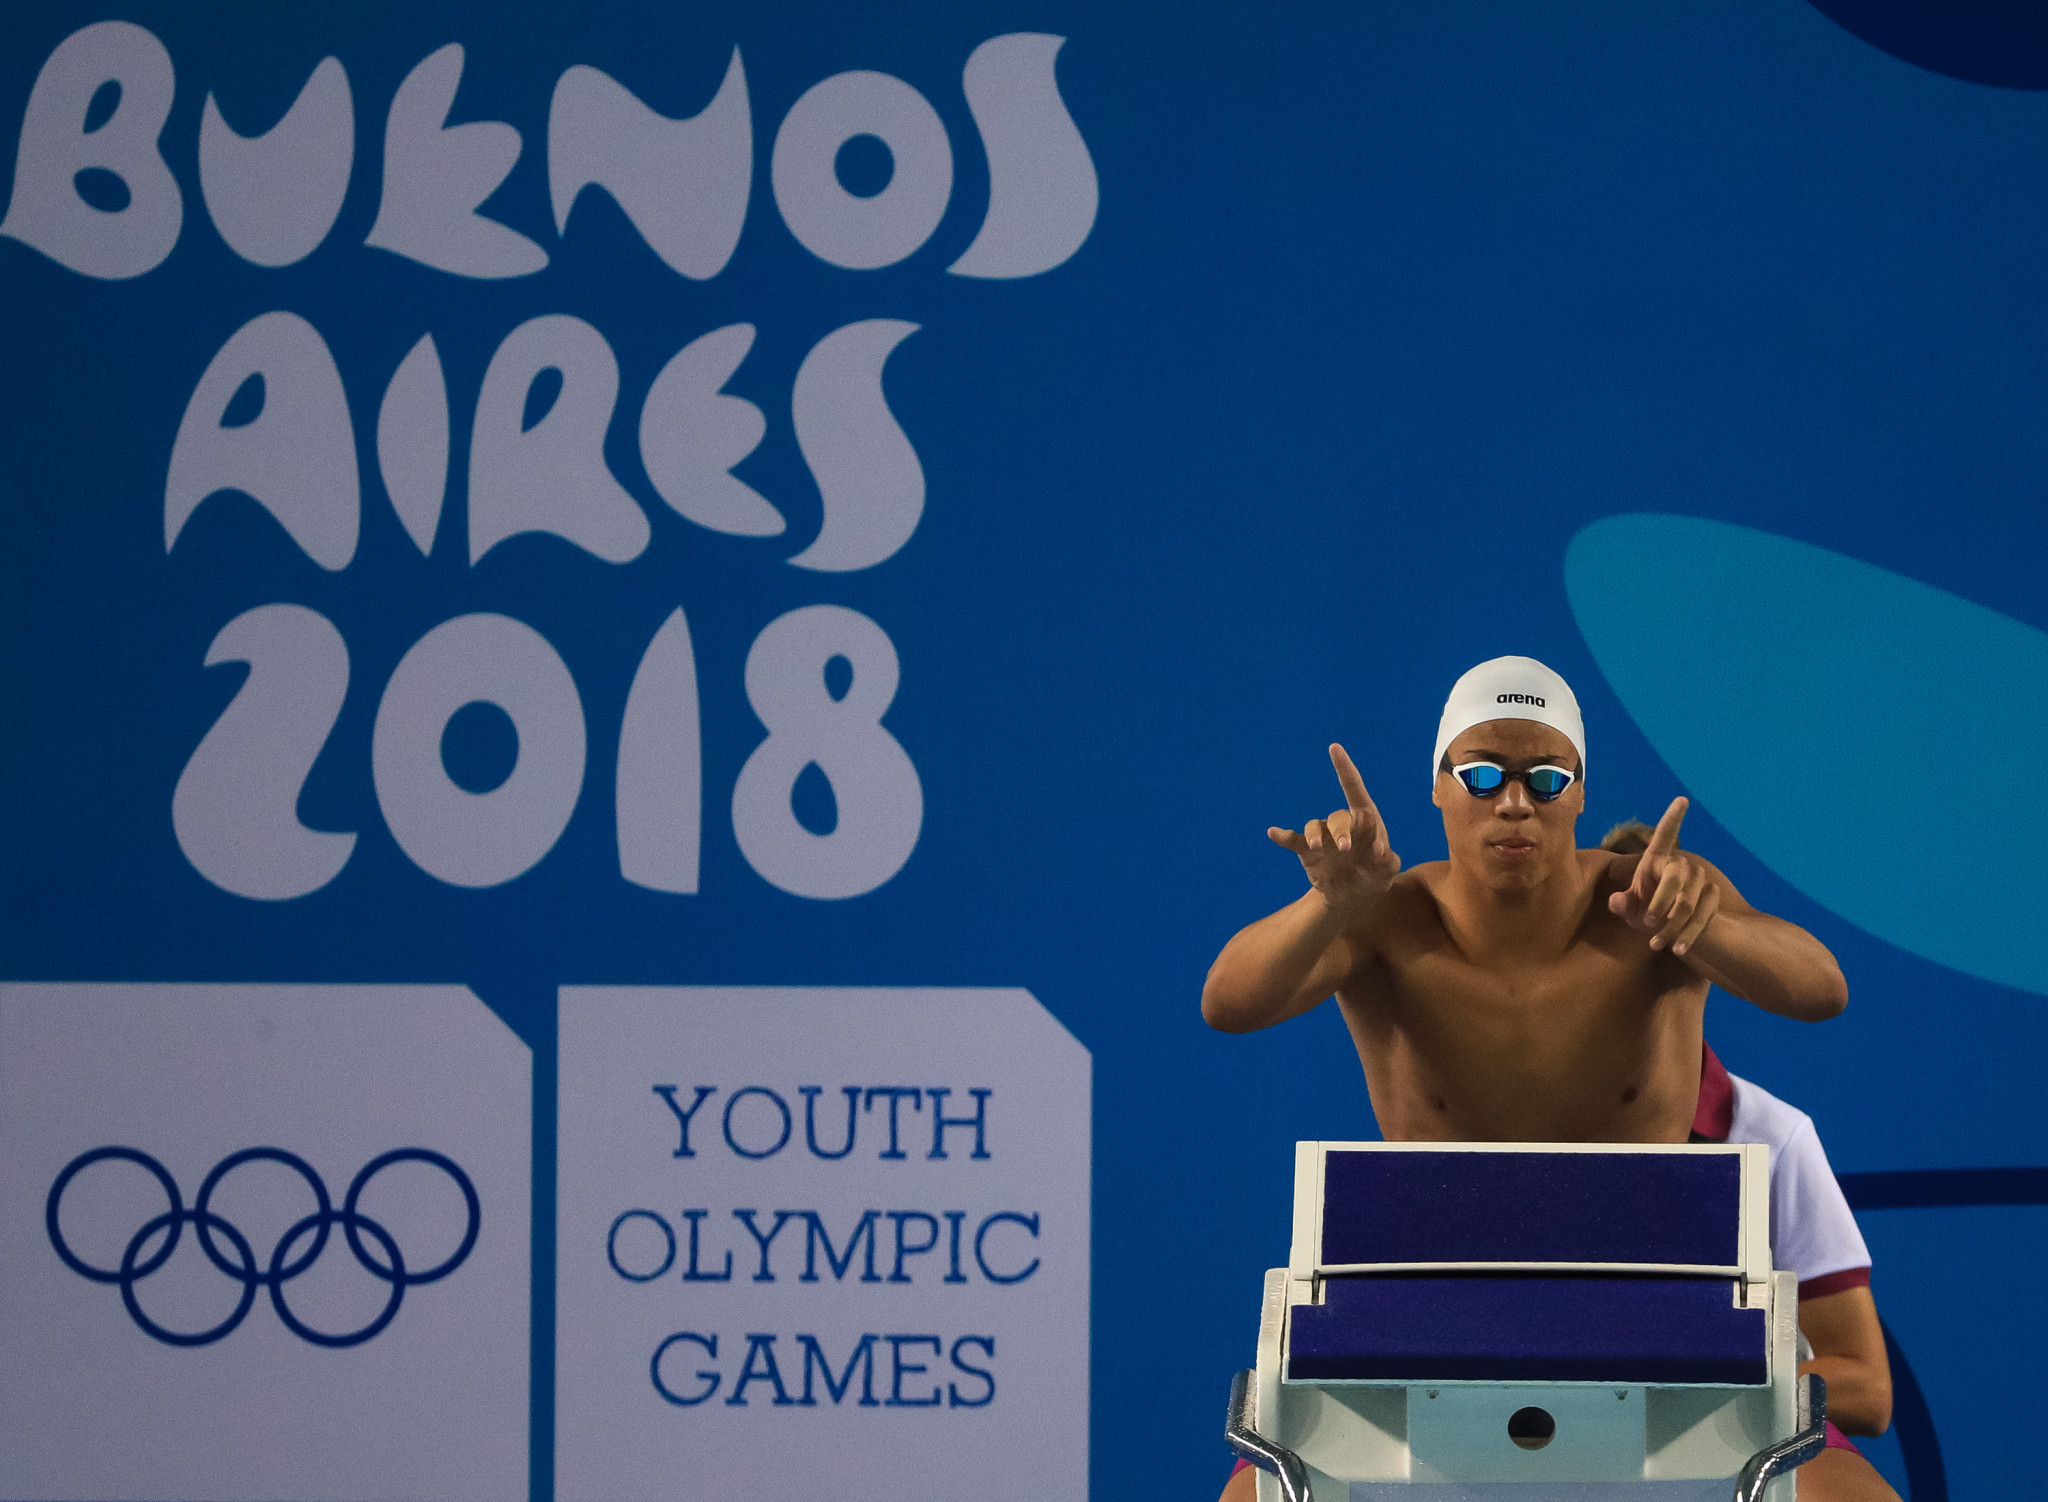 شروع قدرتمندانه روسیه در بازیهای المپیک جوانان بوینس آیرس 2018